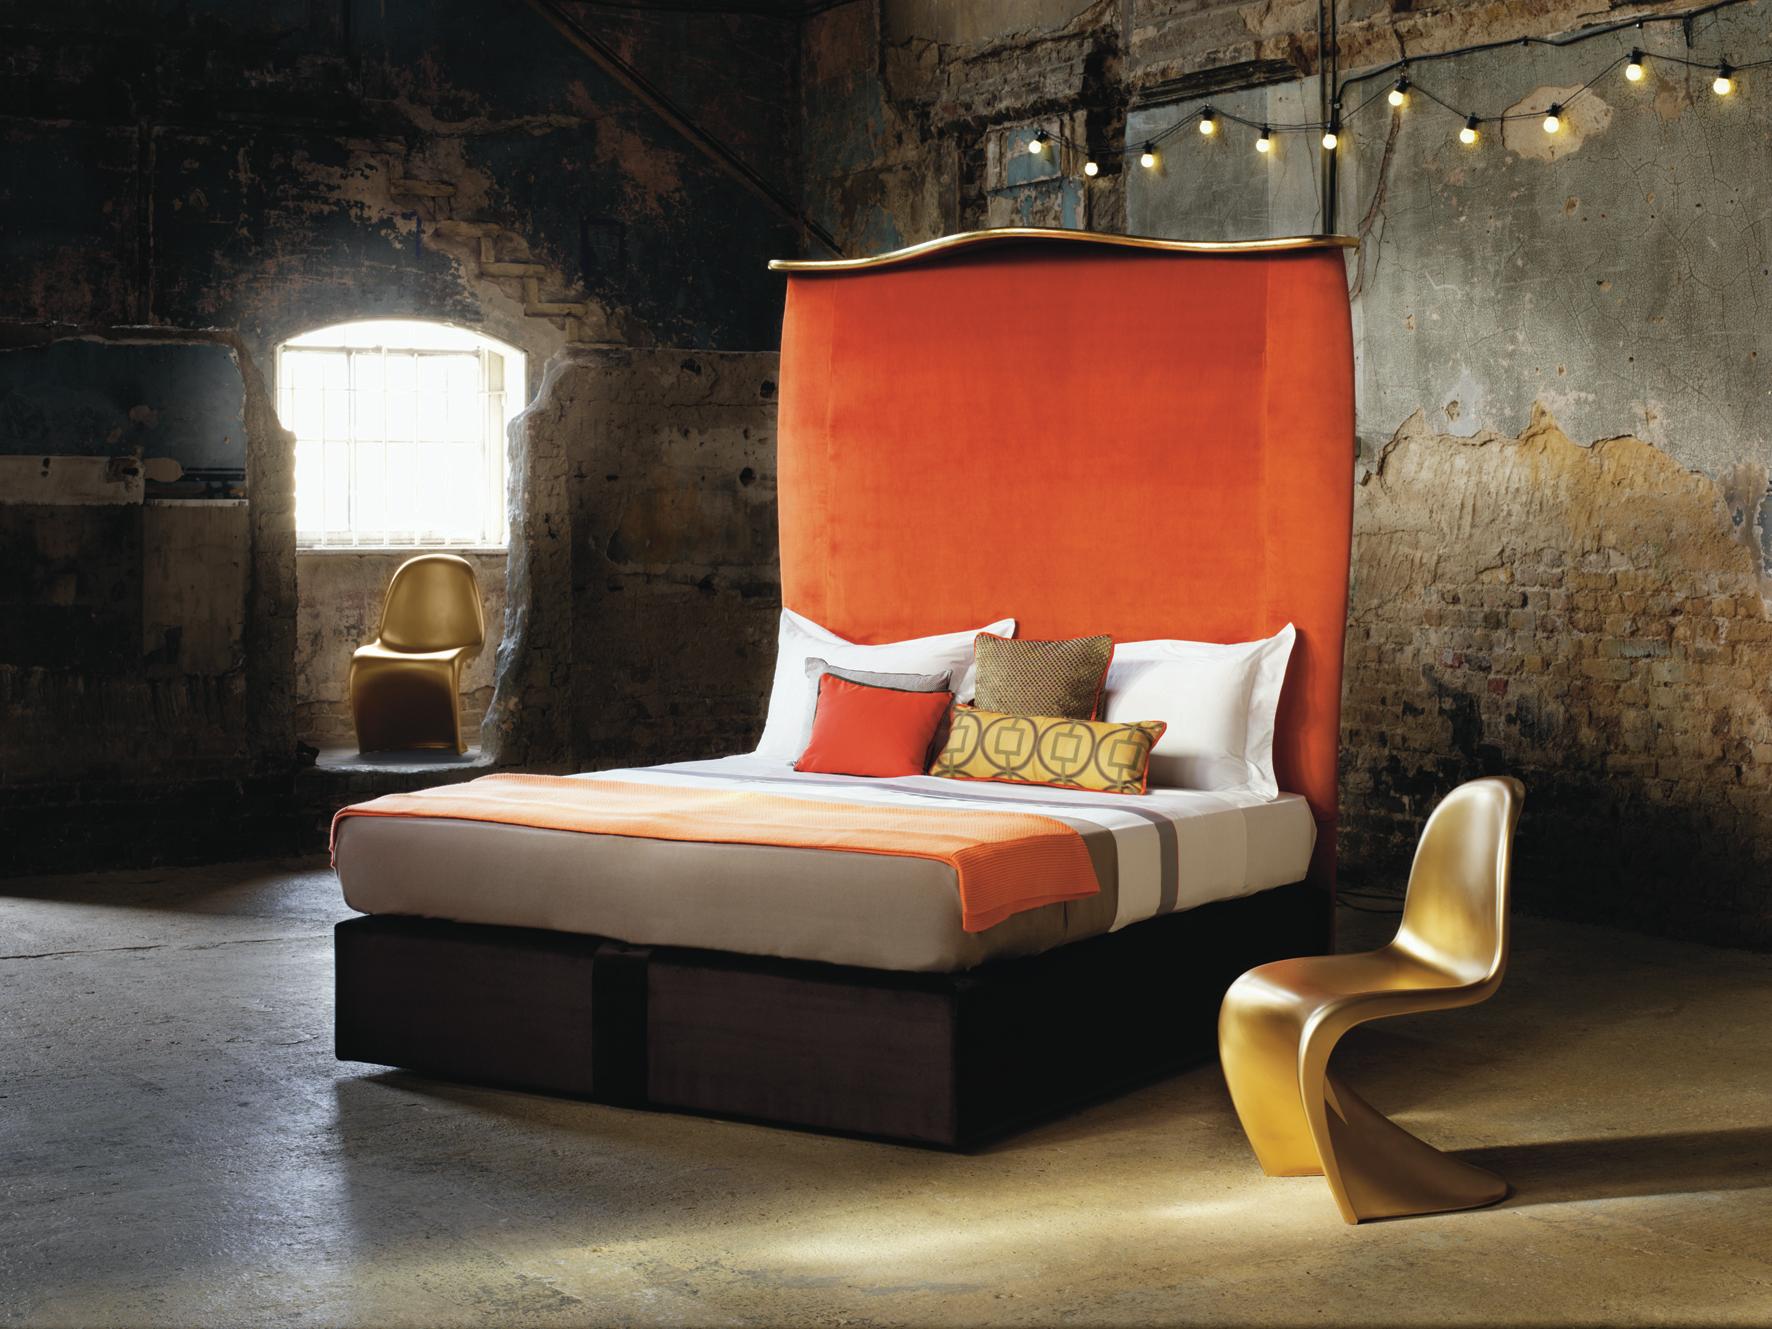 Nicky Haslam, eine der einflussreichsten Innenarchitektinnen Großbritanniens, ist bekannt für hochwertiges Design, maßgefertigte Möbel und einen ständig wechselnden Stil. In Zusammenarbeit mit Savoir hat er ein atemberaubendes Bett mit einem